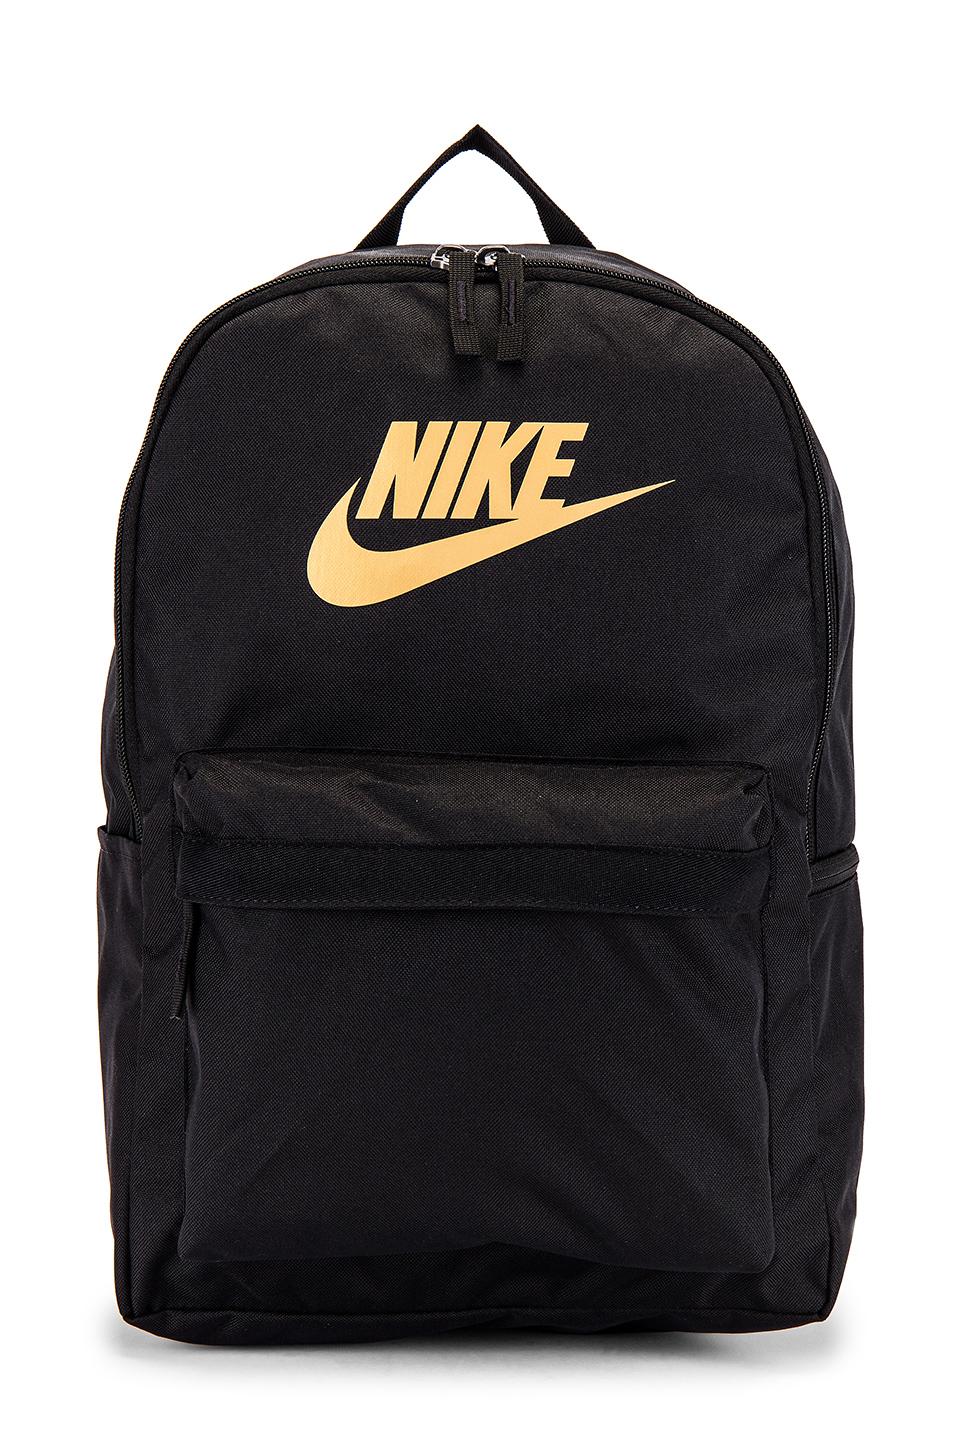 Nike Nk Heritage Backpack 2.0 in Black & Metallic Gold (Black) | Lyst